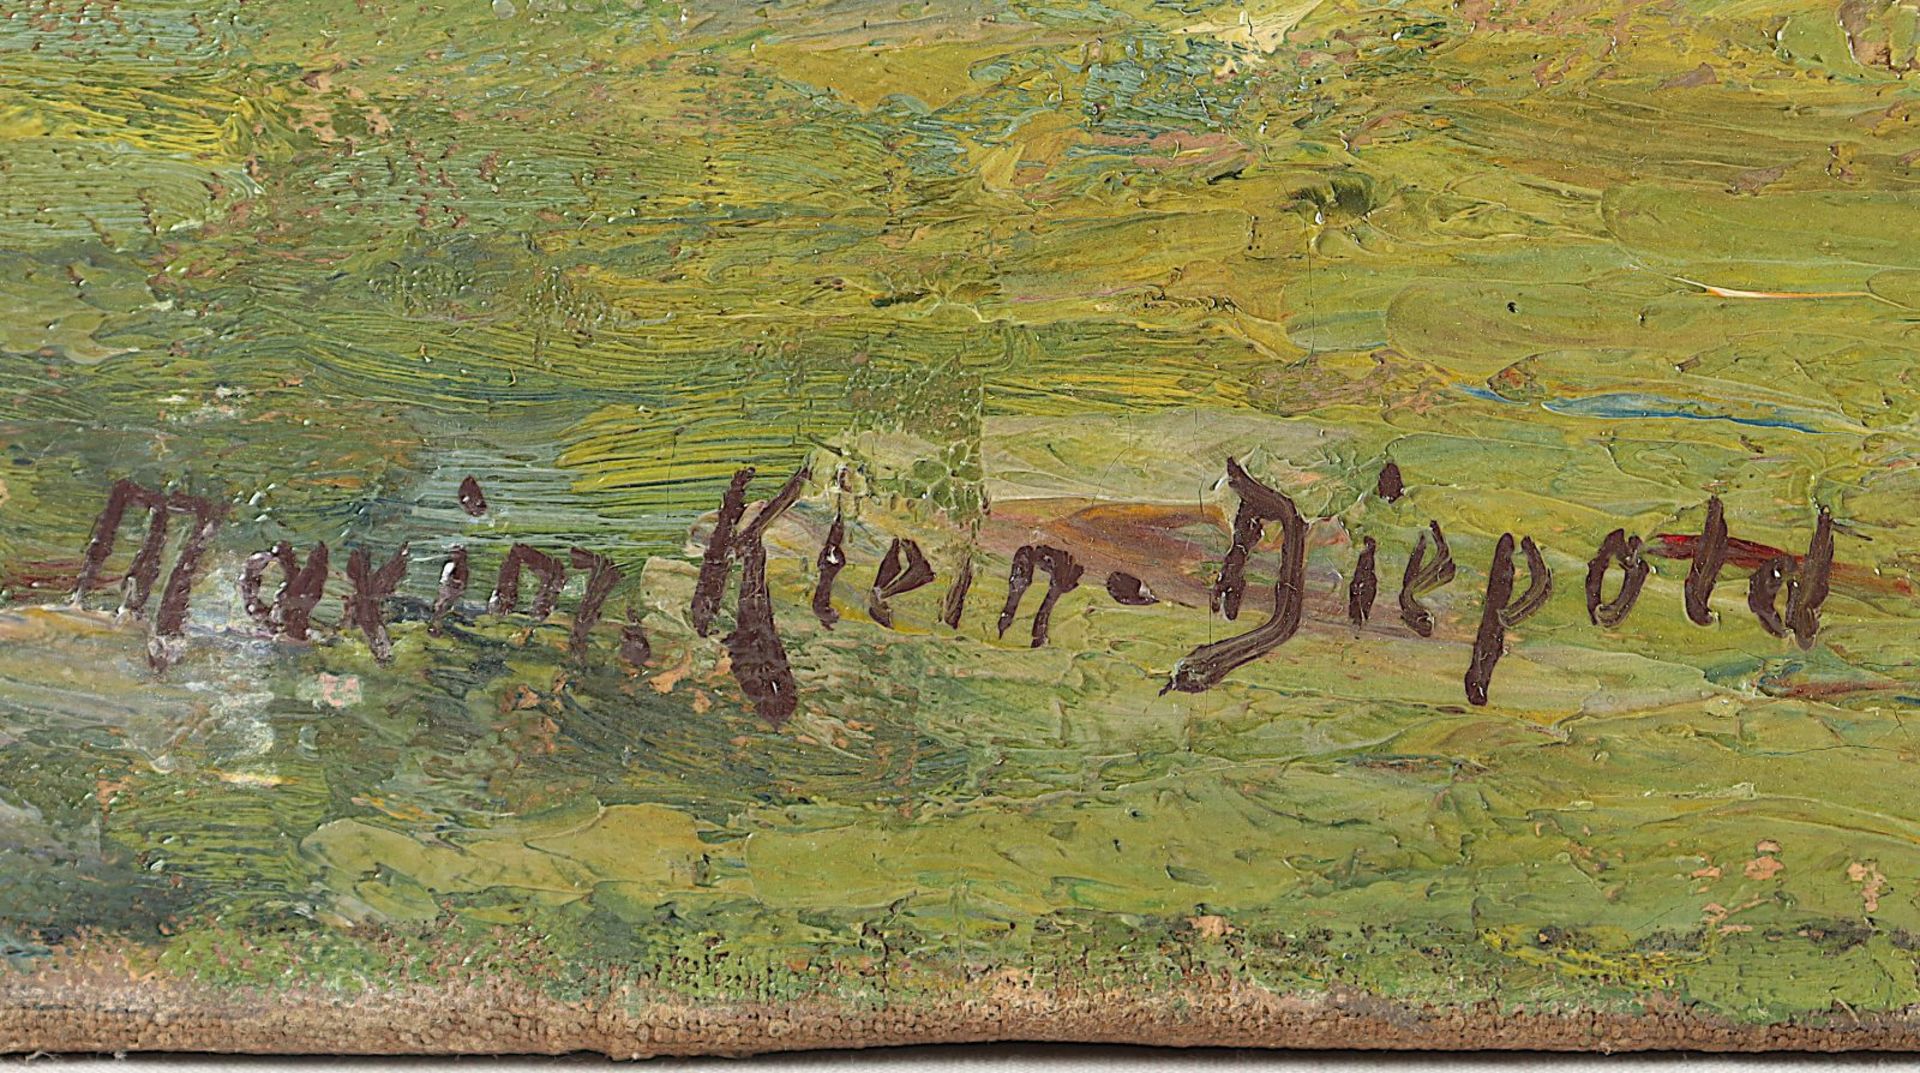 KLEIN-DIEPOLD, Maximilian (1873-1949), "Ländliche Idylle am Niederrhein" - Image 3 of 4